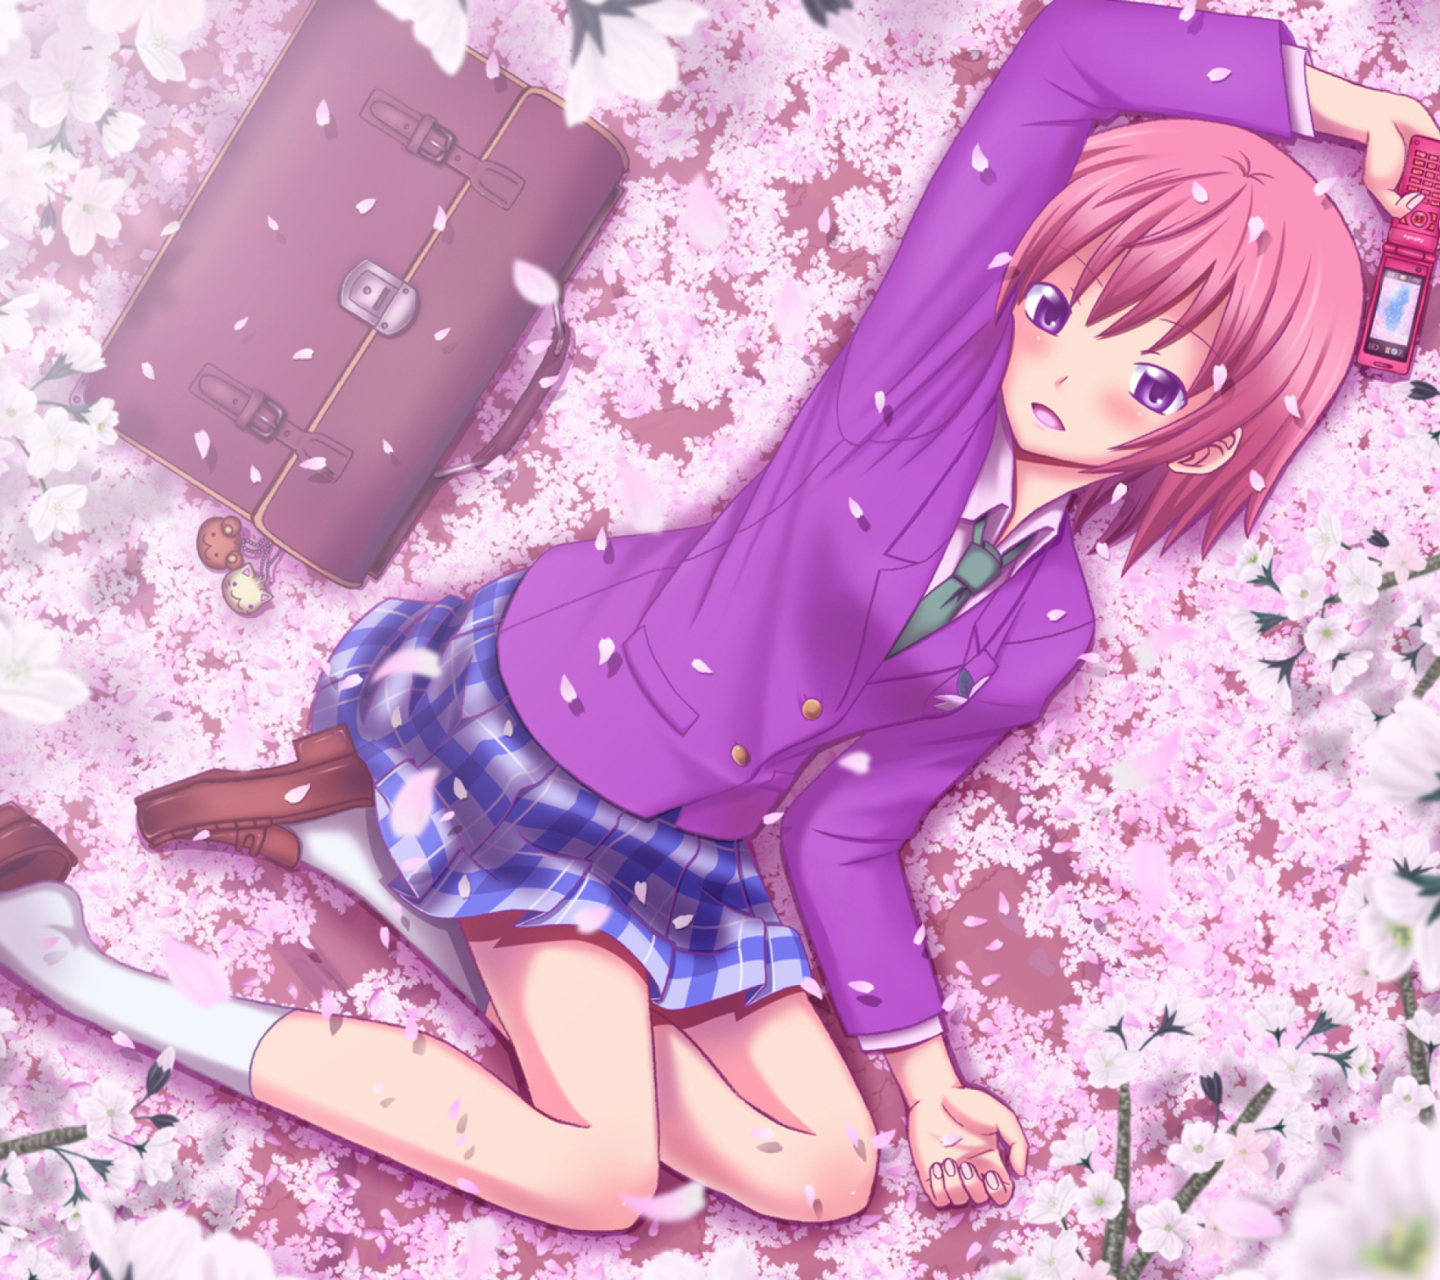 Das Anime Sakura Wallpaper 1440x1280